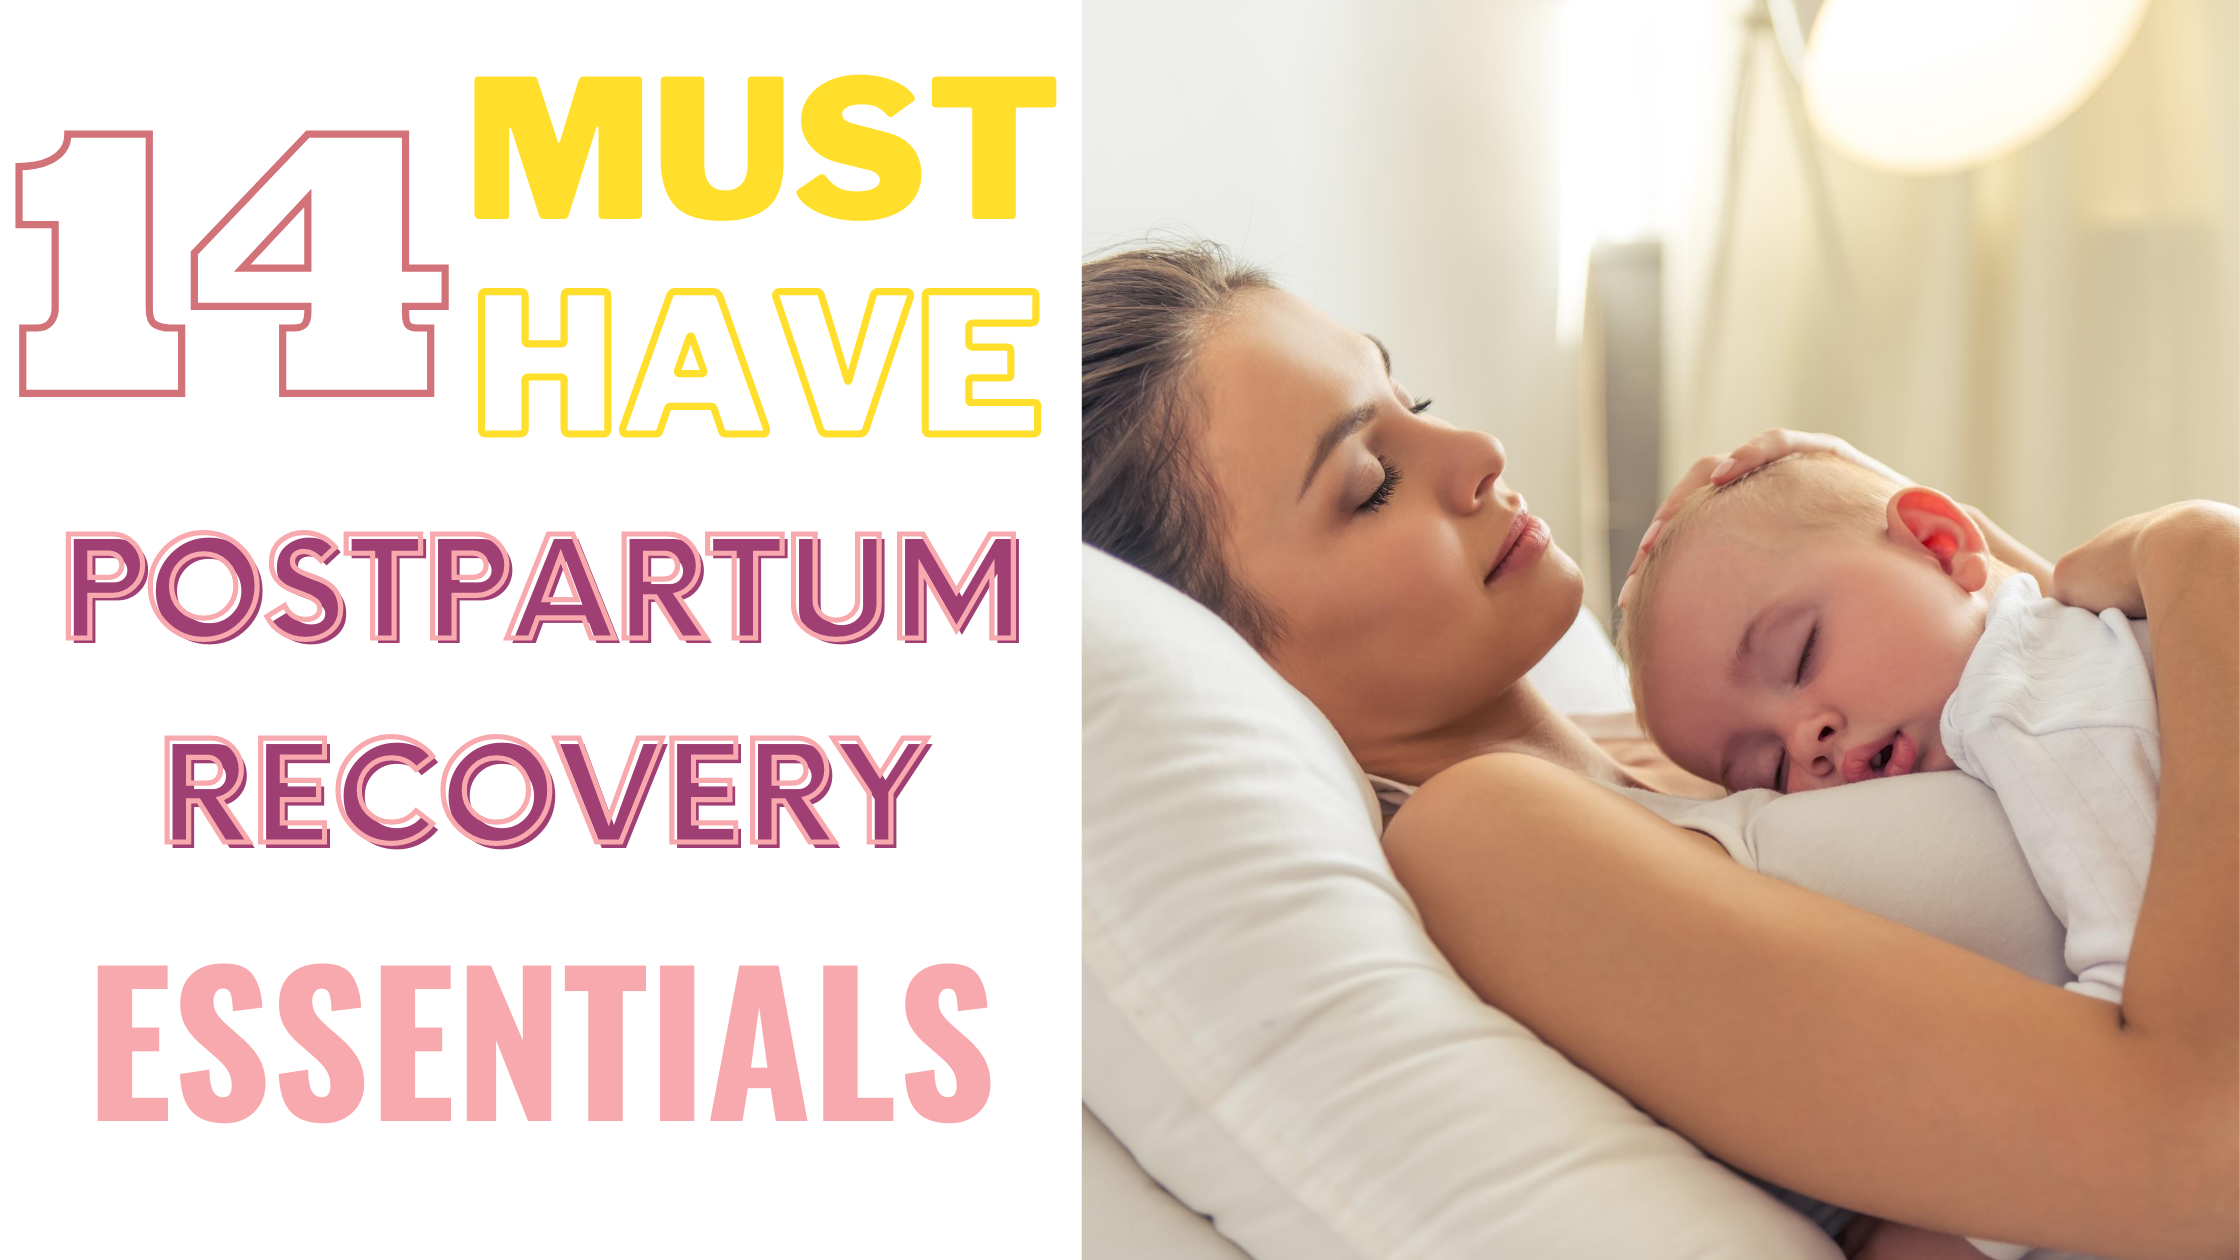 Postpartum Recovery Essentials